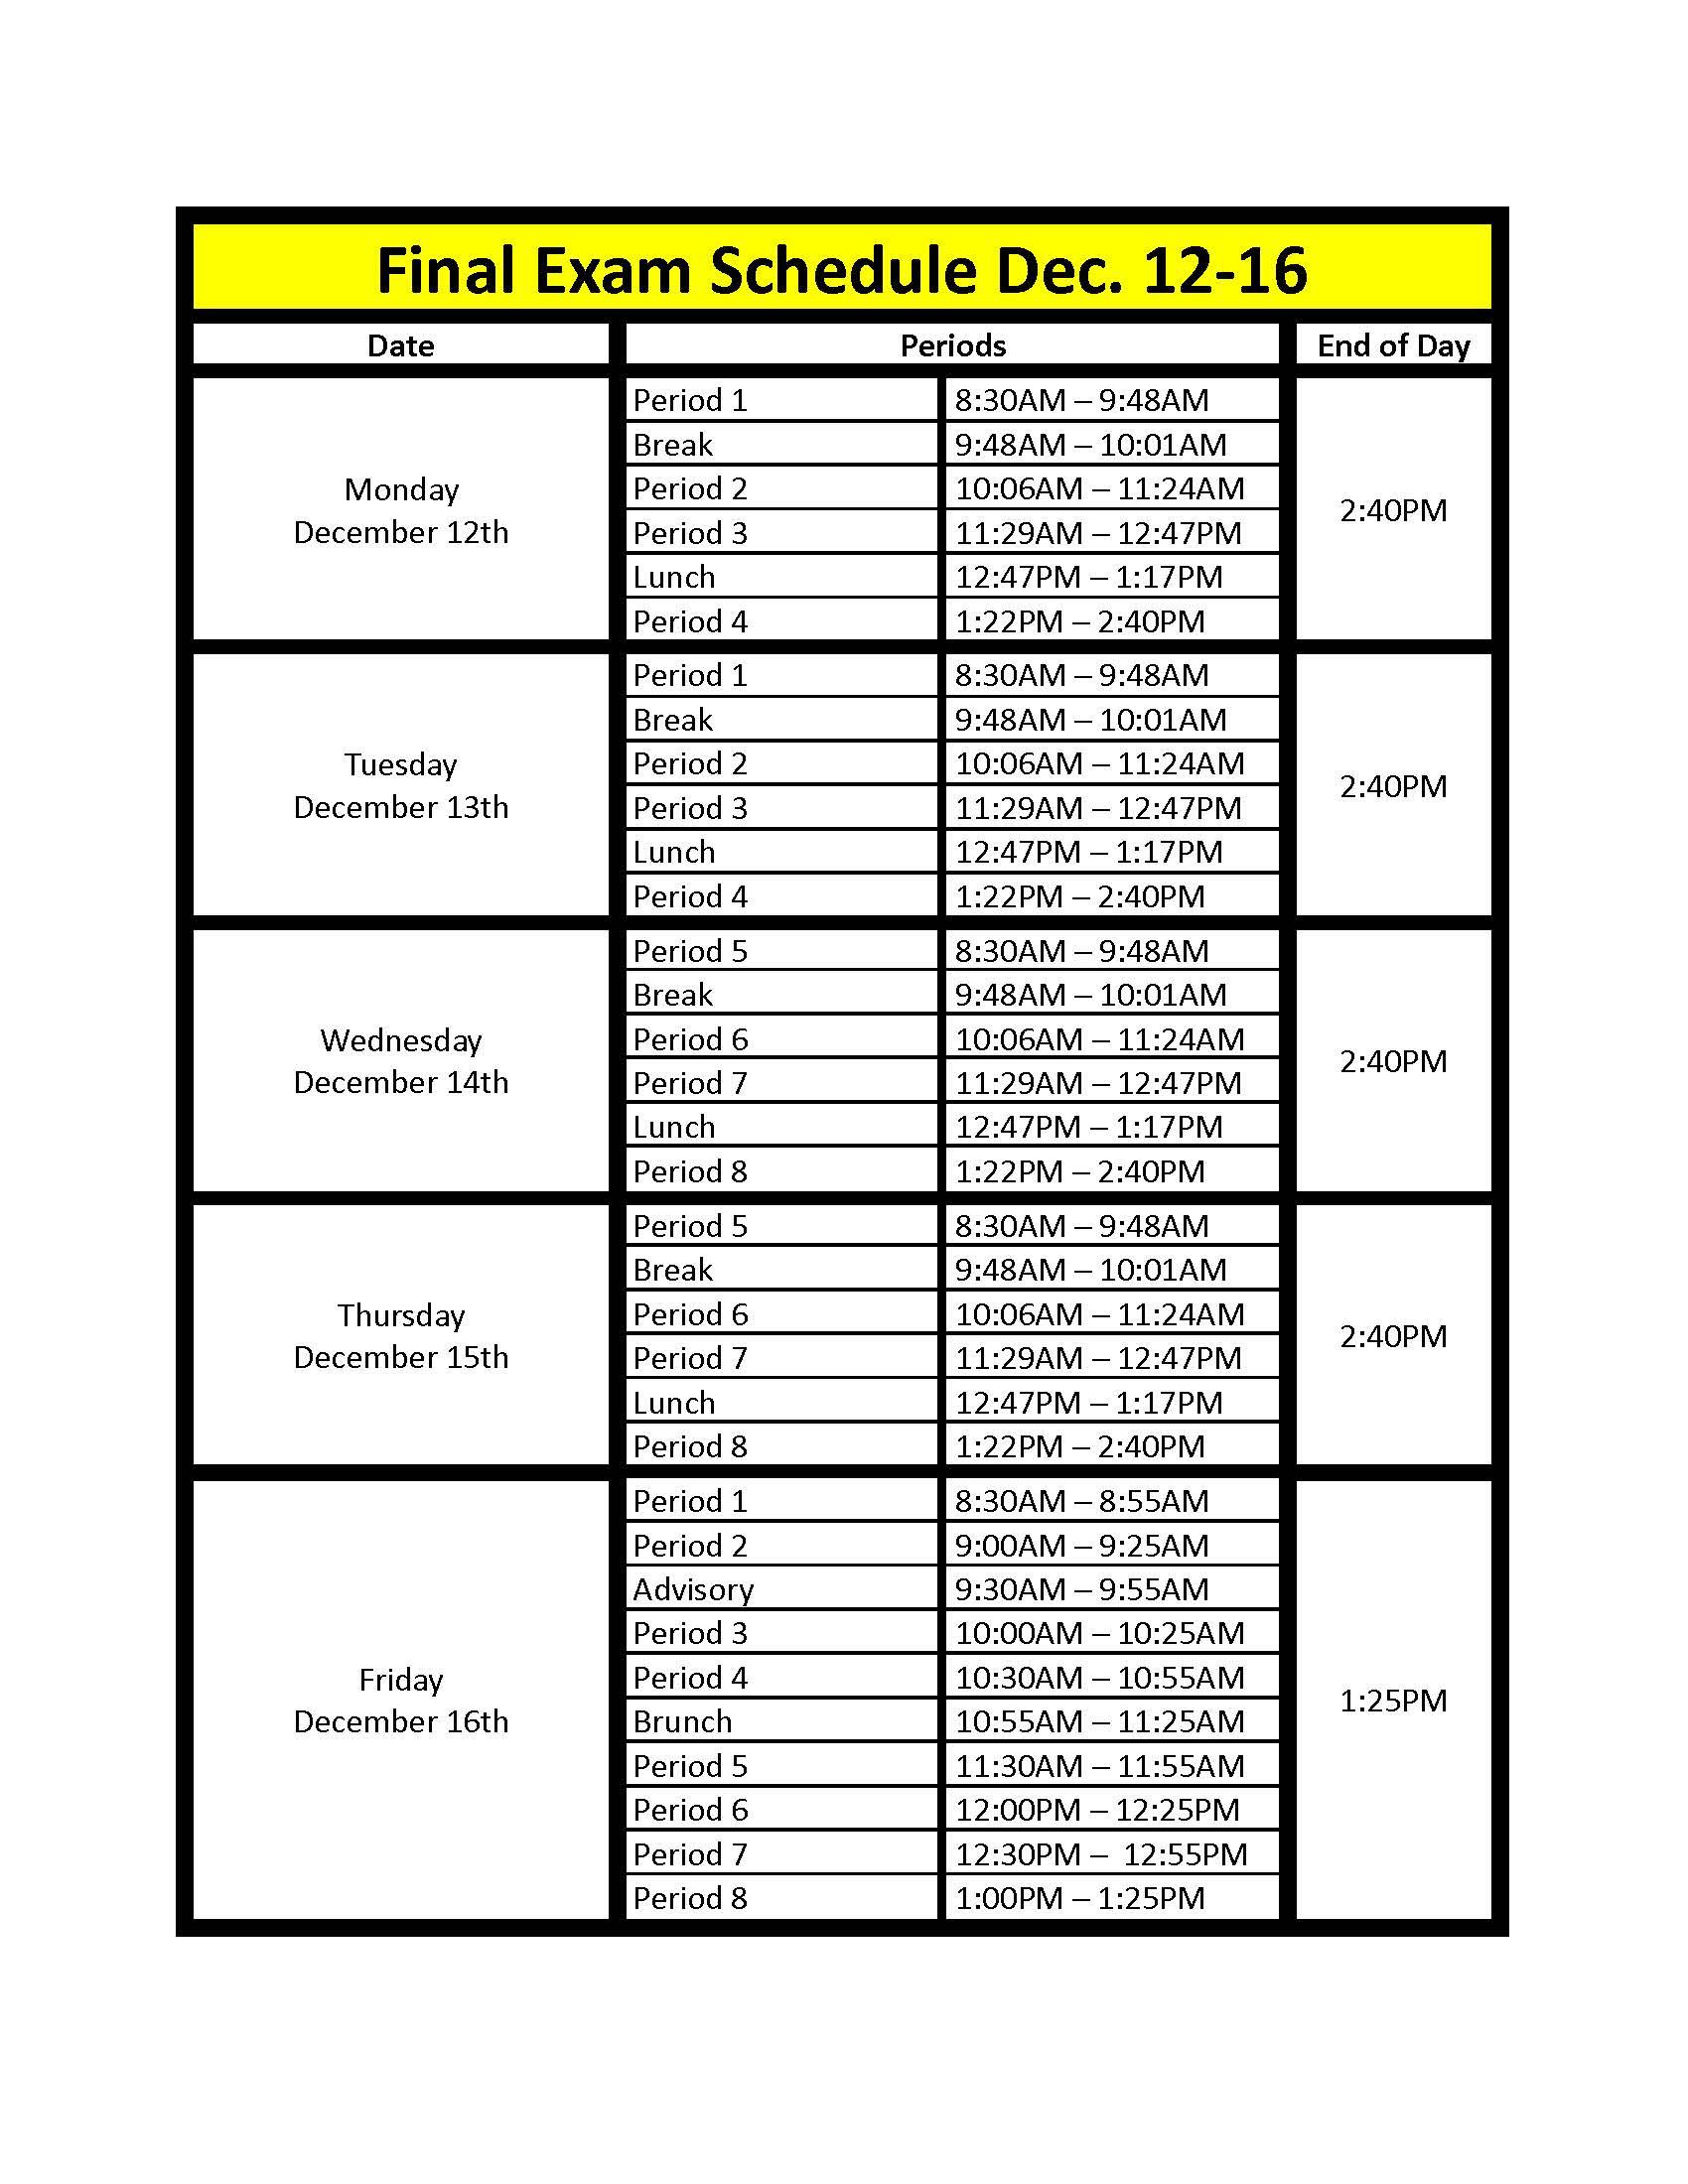 Final Bell Schedule